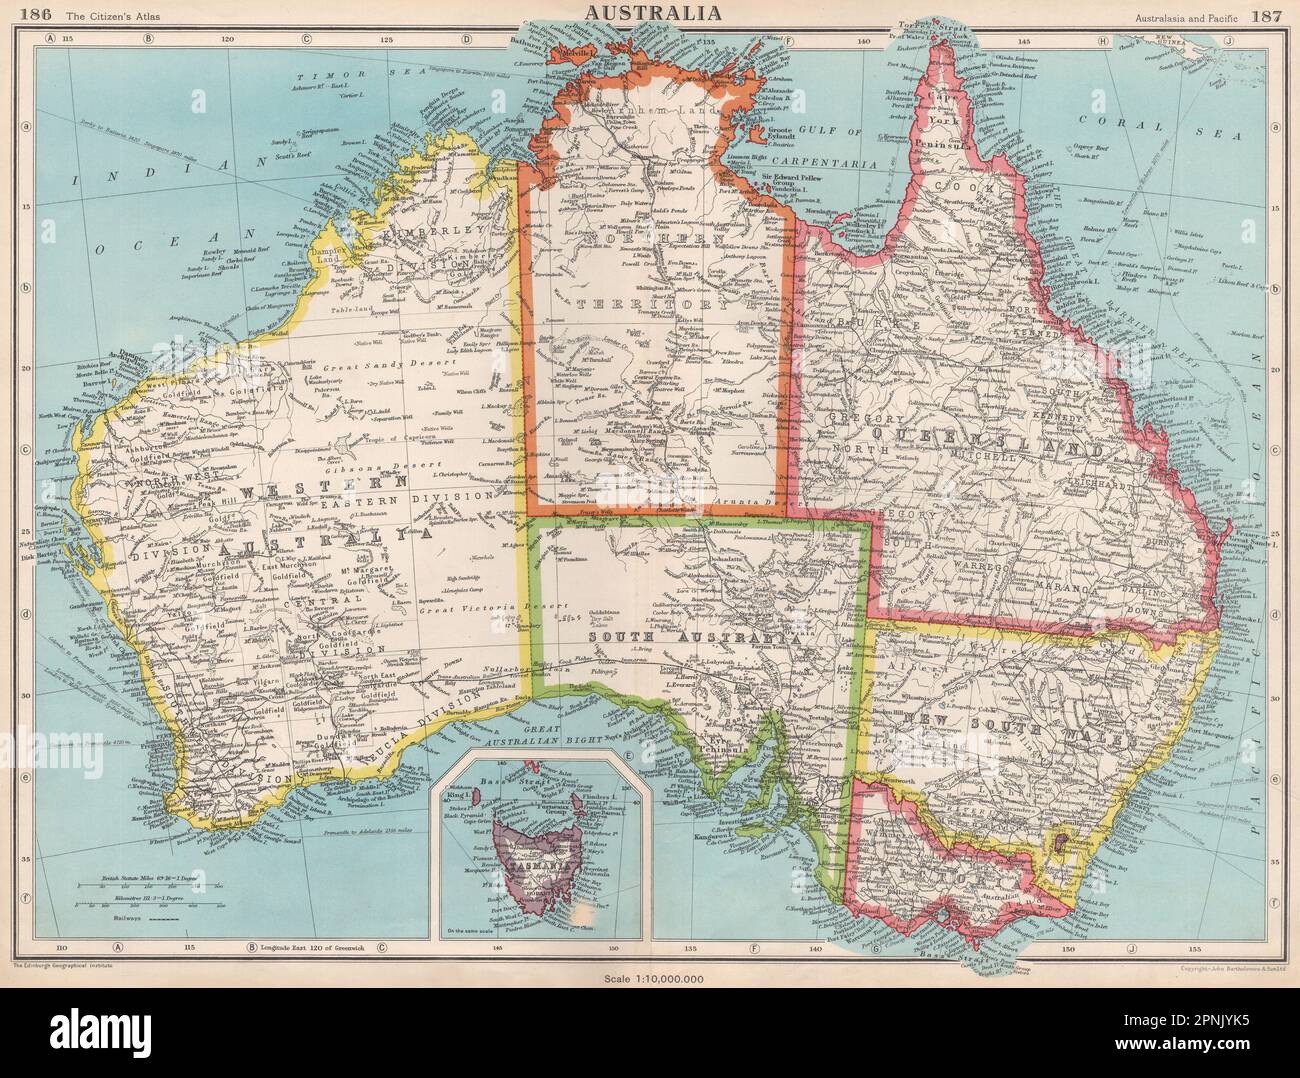 AUSTRALIA. Showing states and railways. BARTHOLOMEW 1952 old vintage map chart Stock Photo